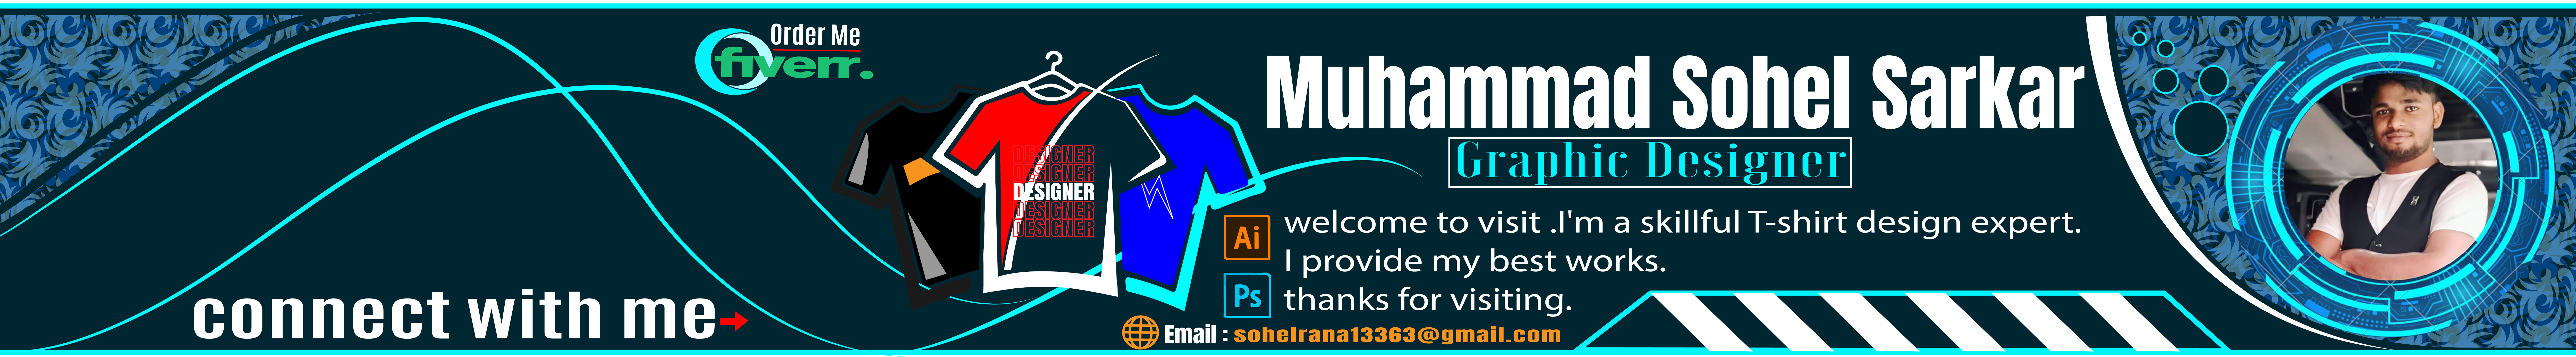 Muhammad Sohel Sarkar's profile banner